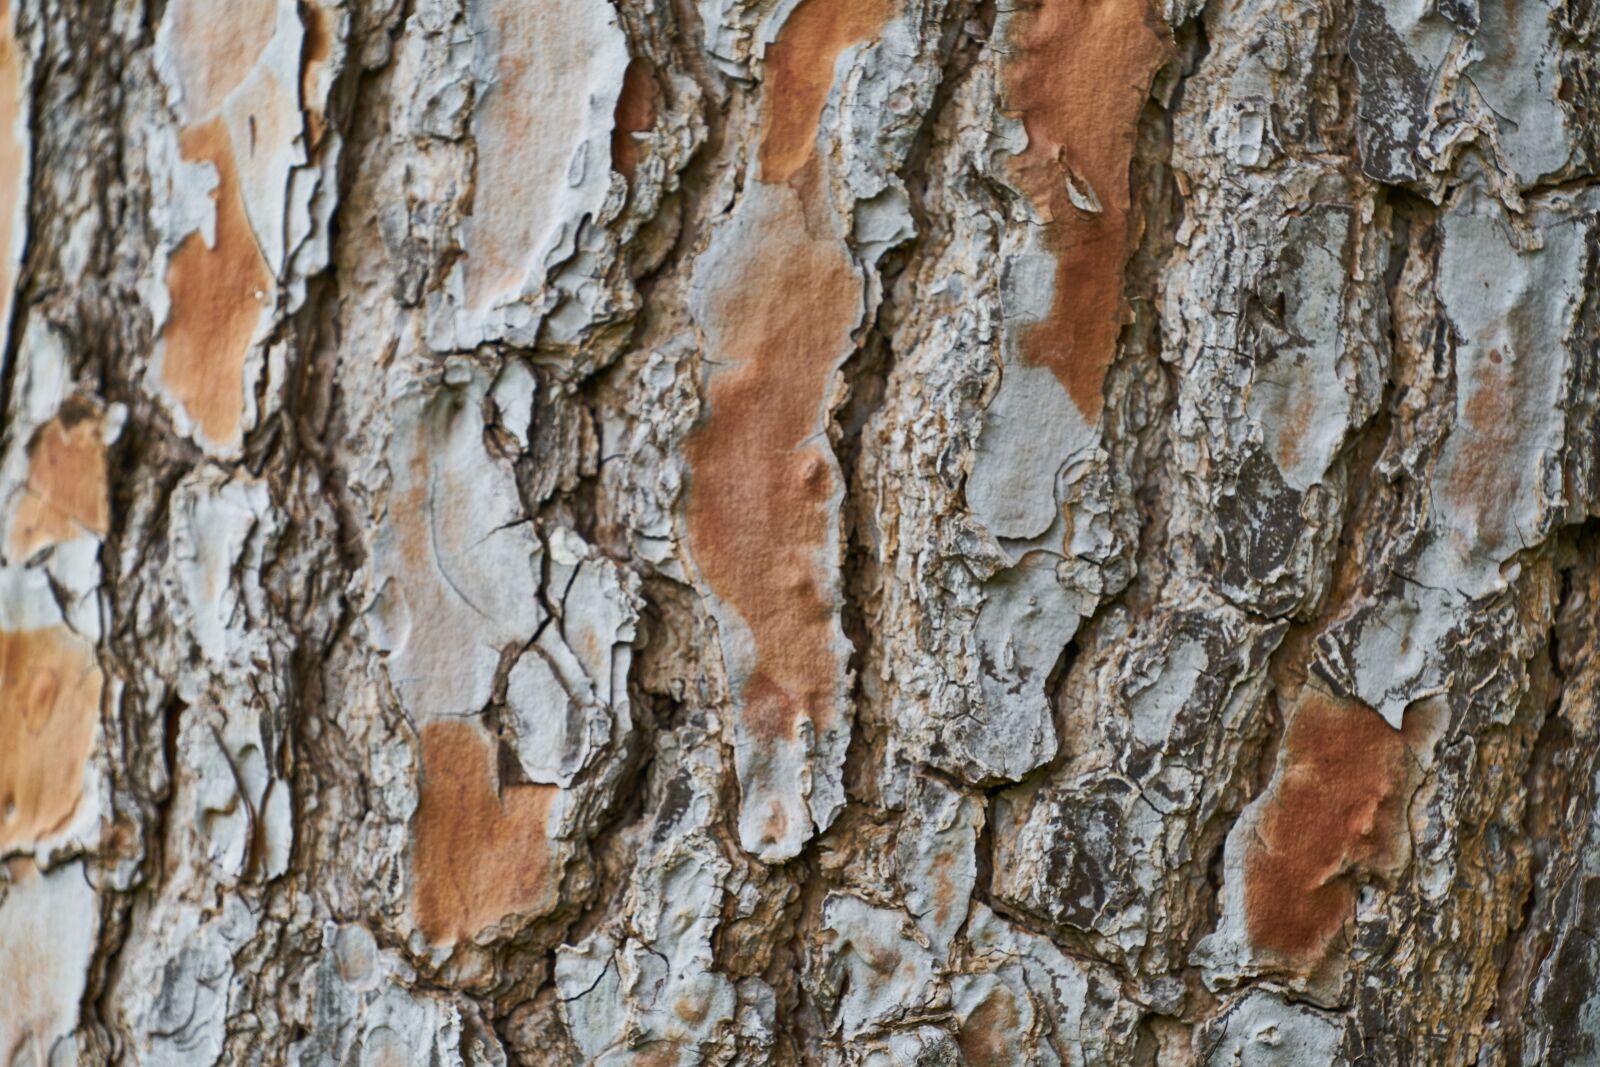 Sony FE 70-200mm F4 G OSS sample photo. Tree, texture, macro photography